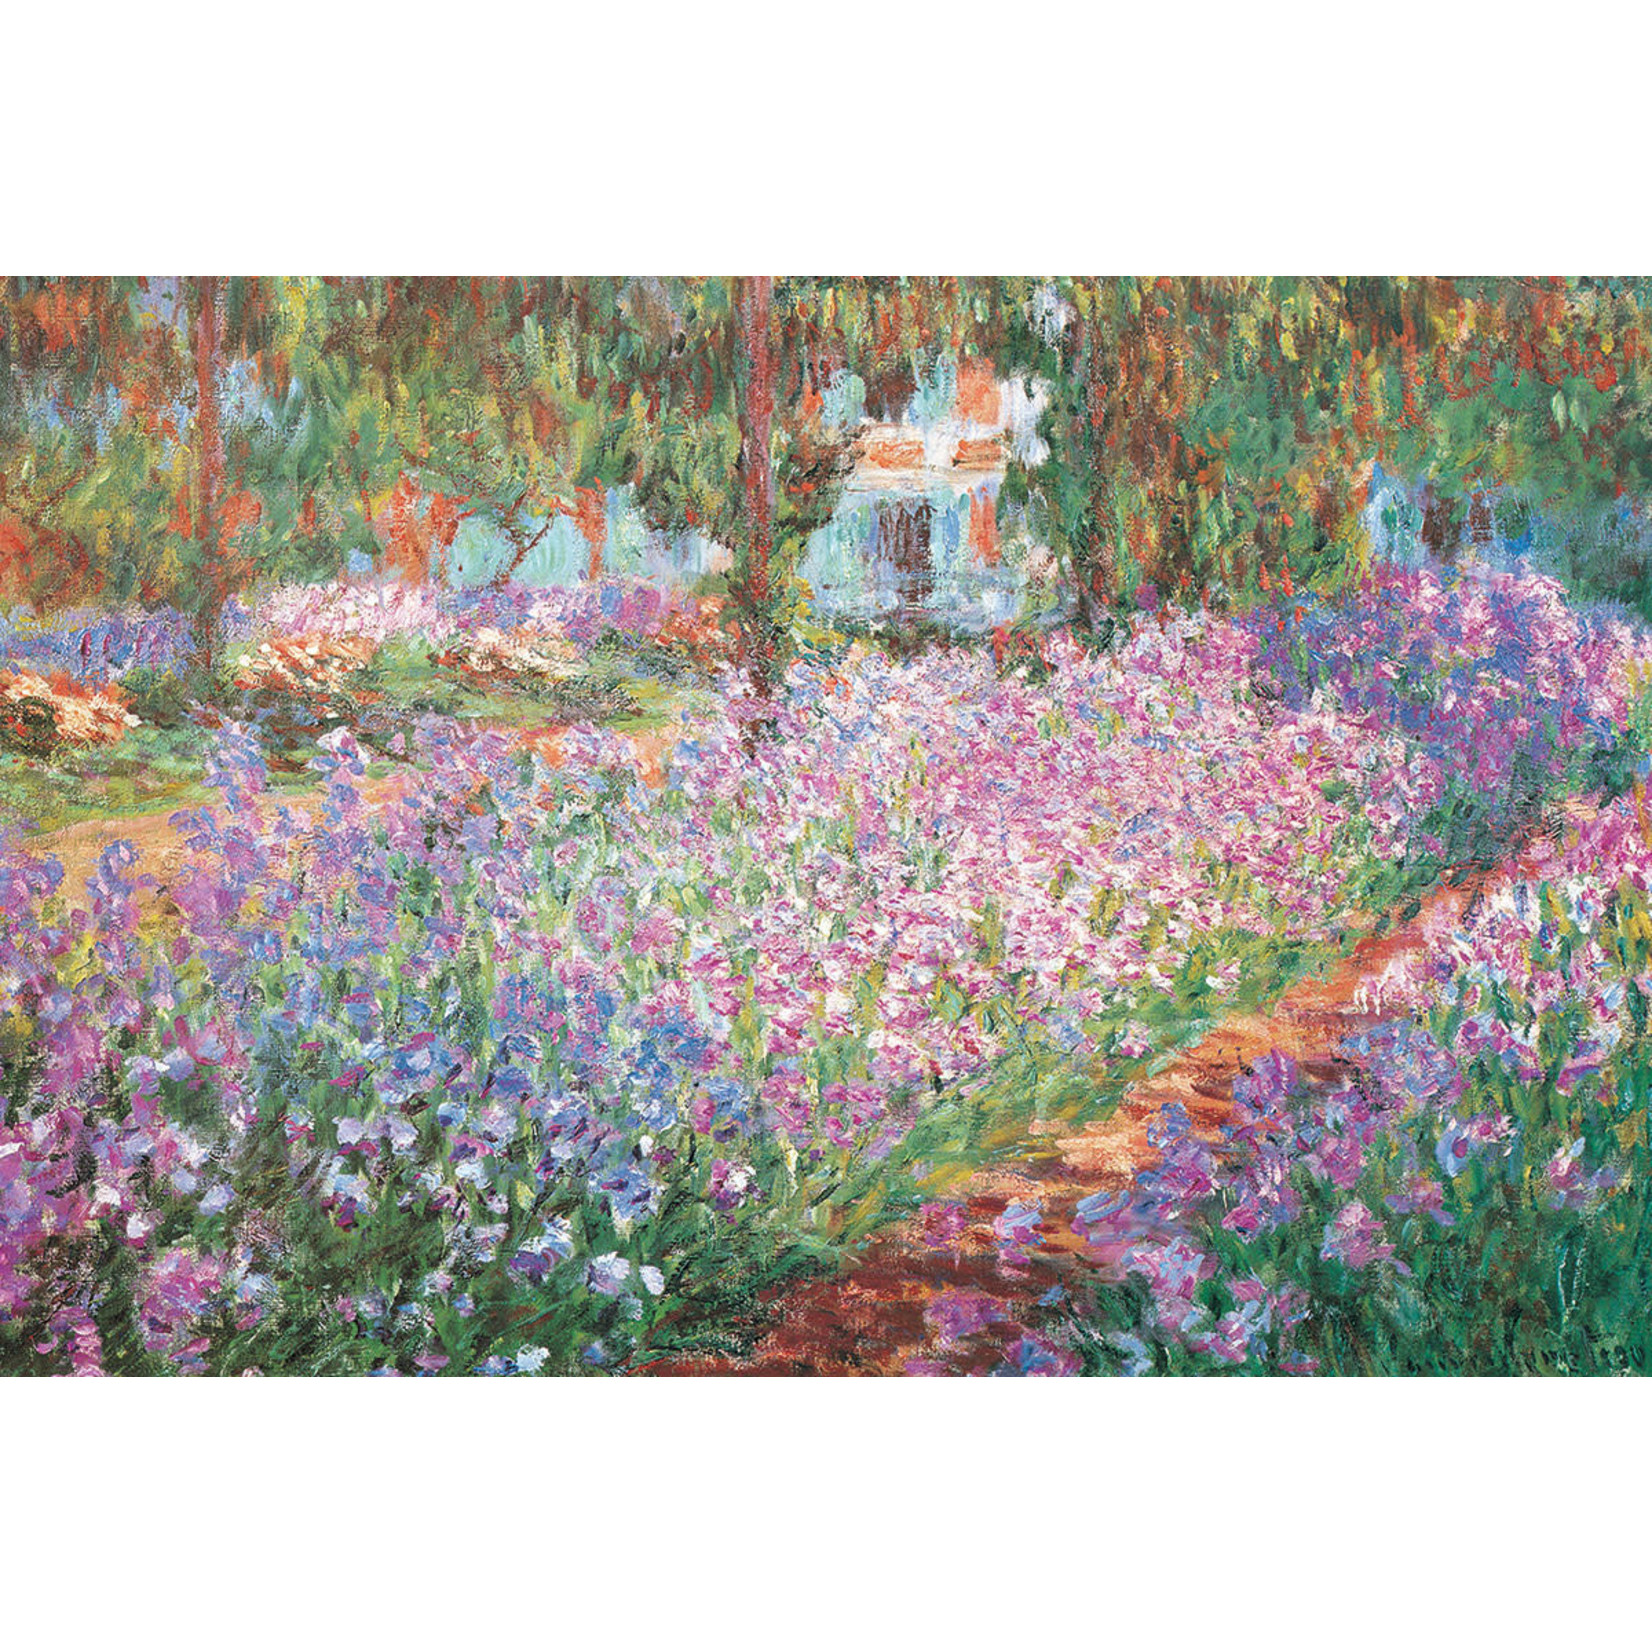 Eurographics Monet's Garden - Monet